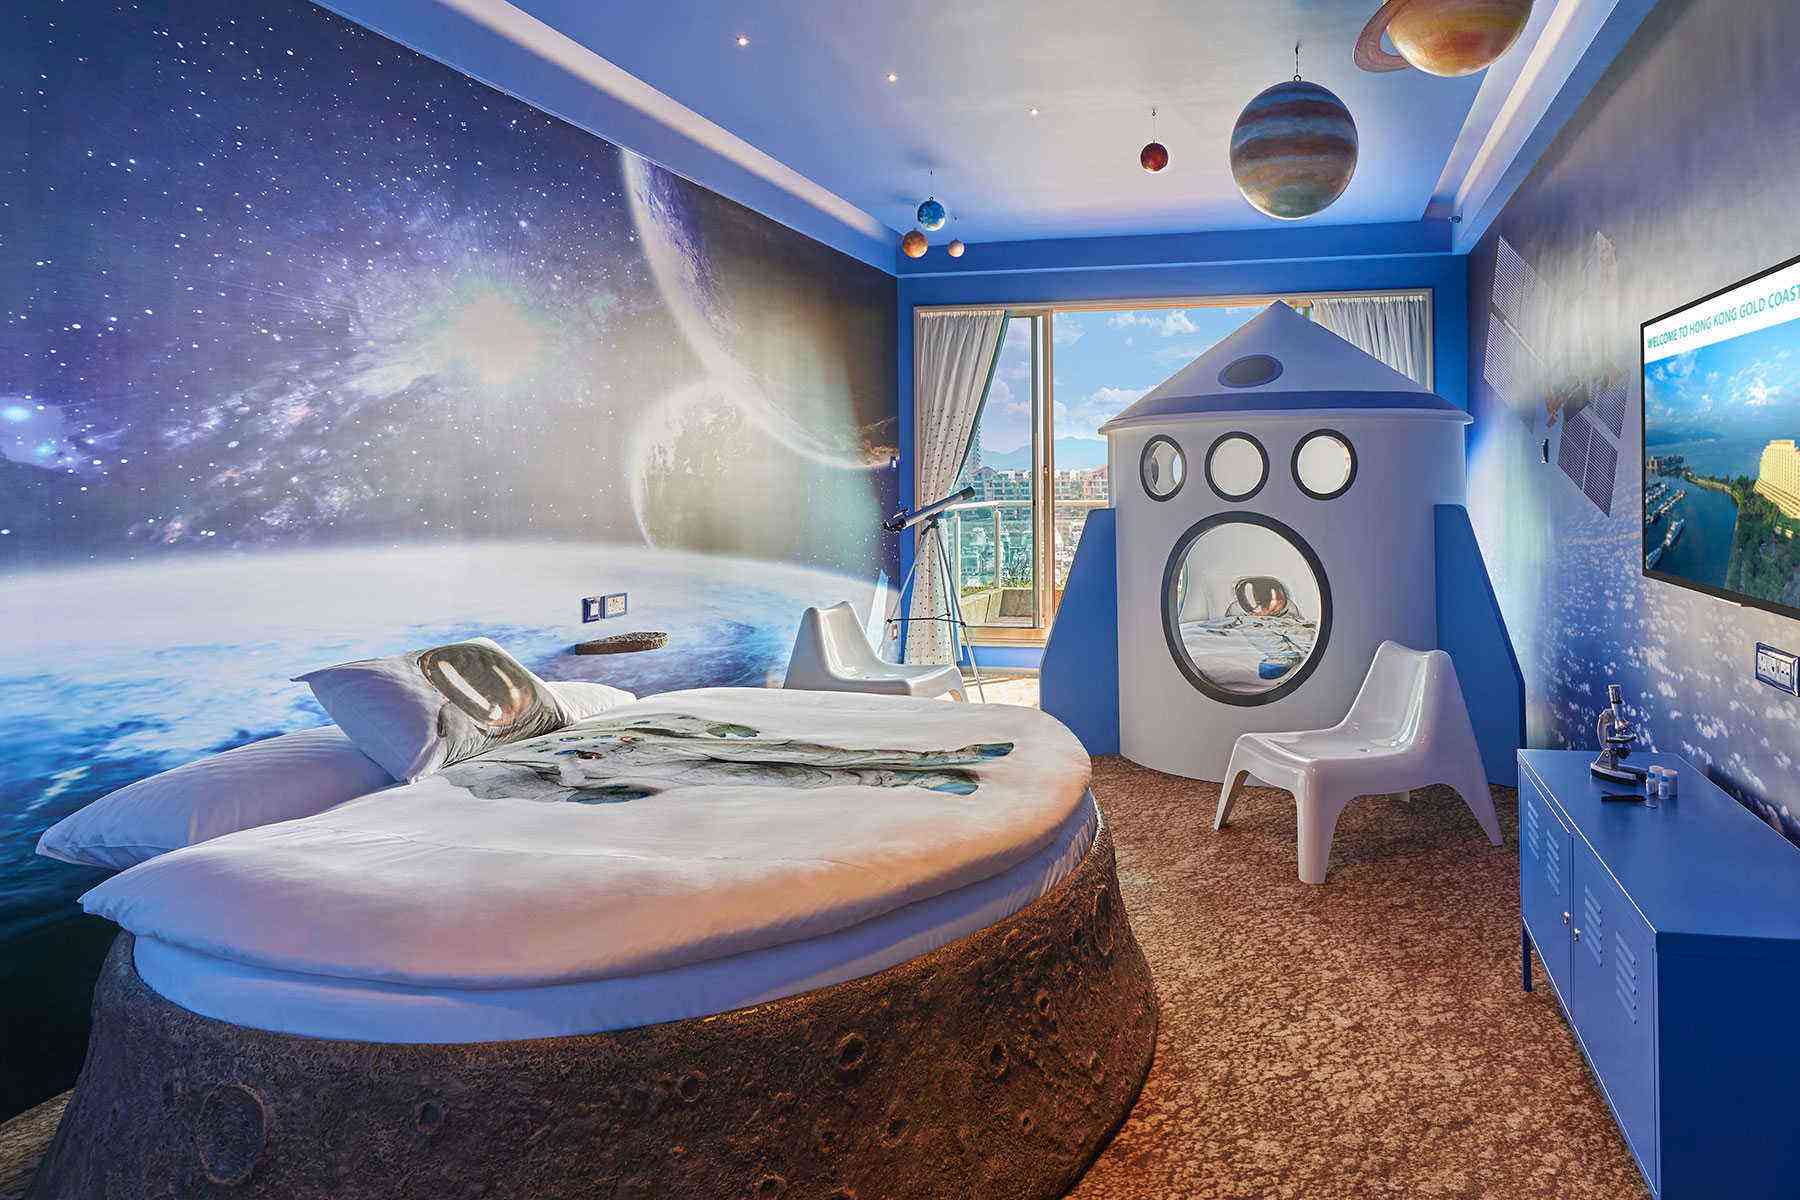 Как оформить комнату в стиле космос: фото, идеи по оформлению